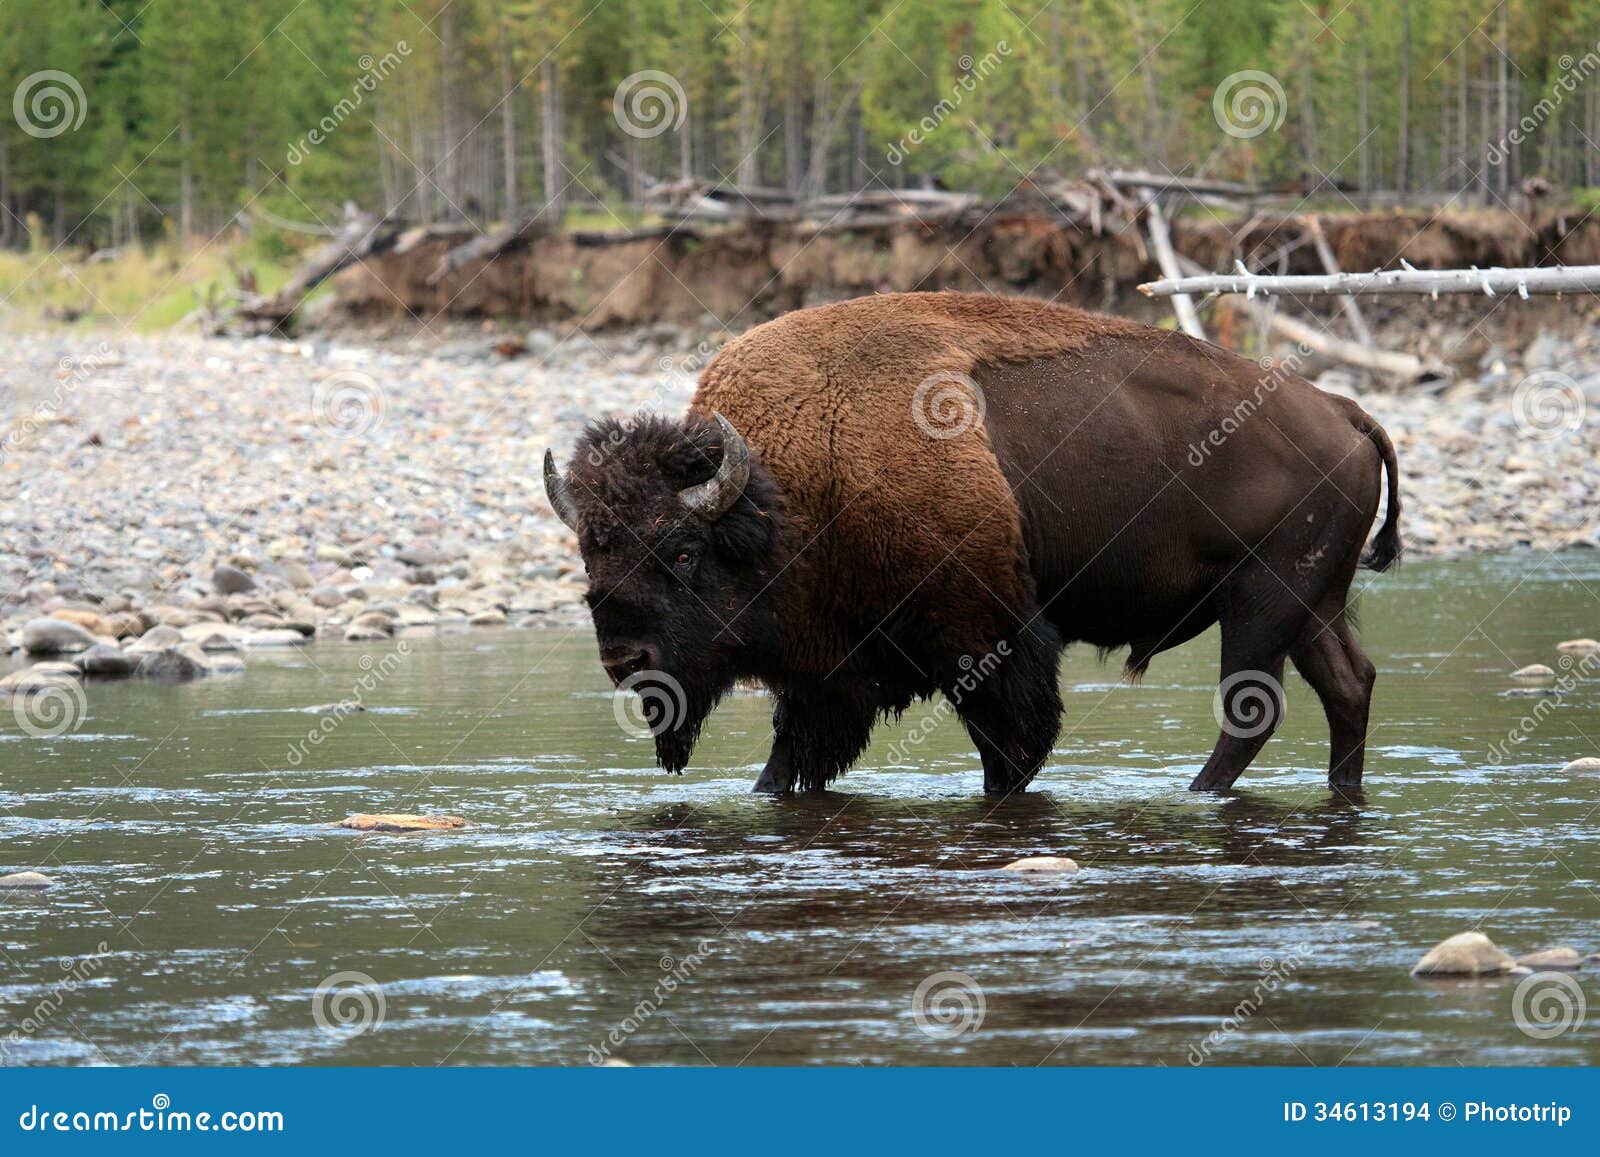 american bison walking in water